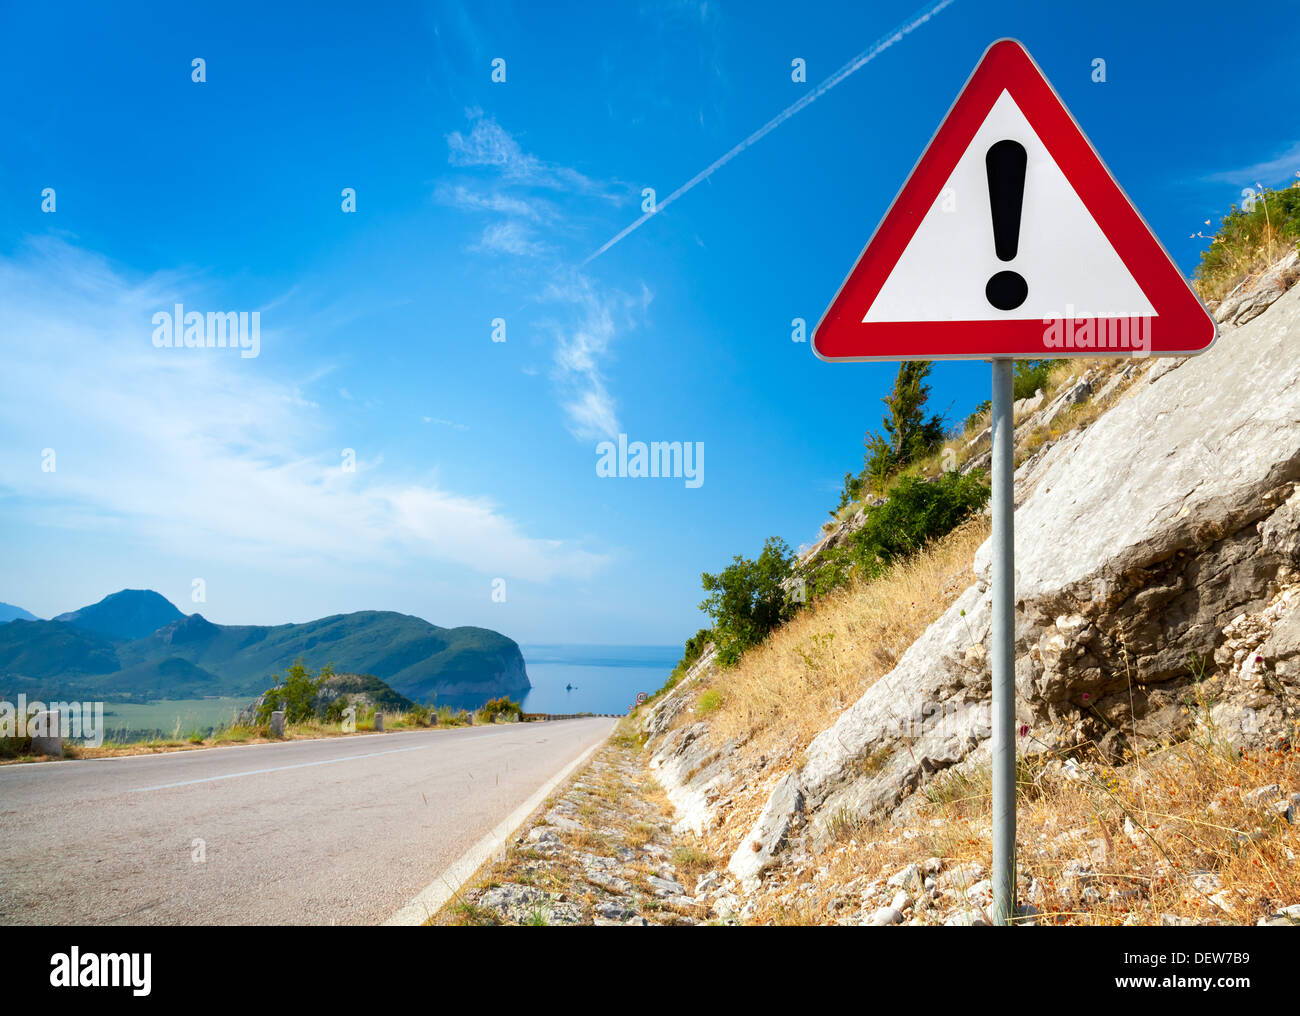 Panneau d'avertissement avec un point d'exclamation dans le triangle rouge sur route de montagne Banque D'Images